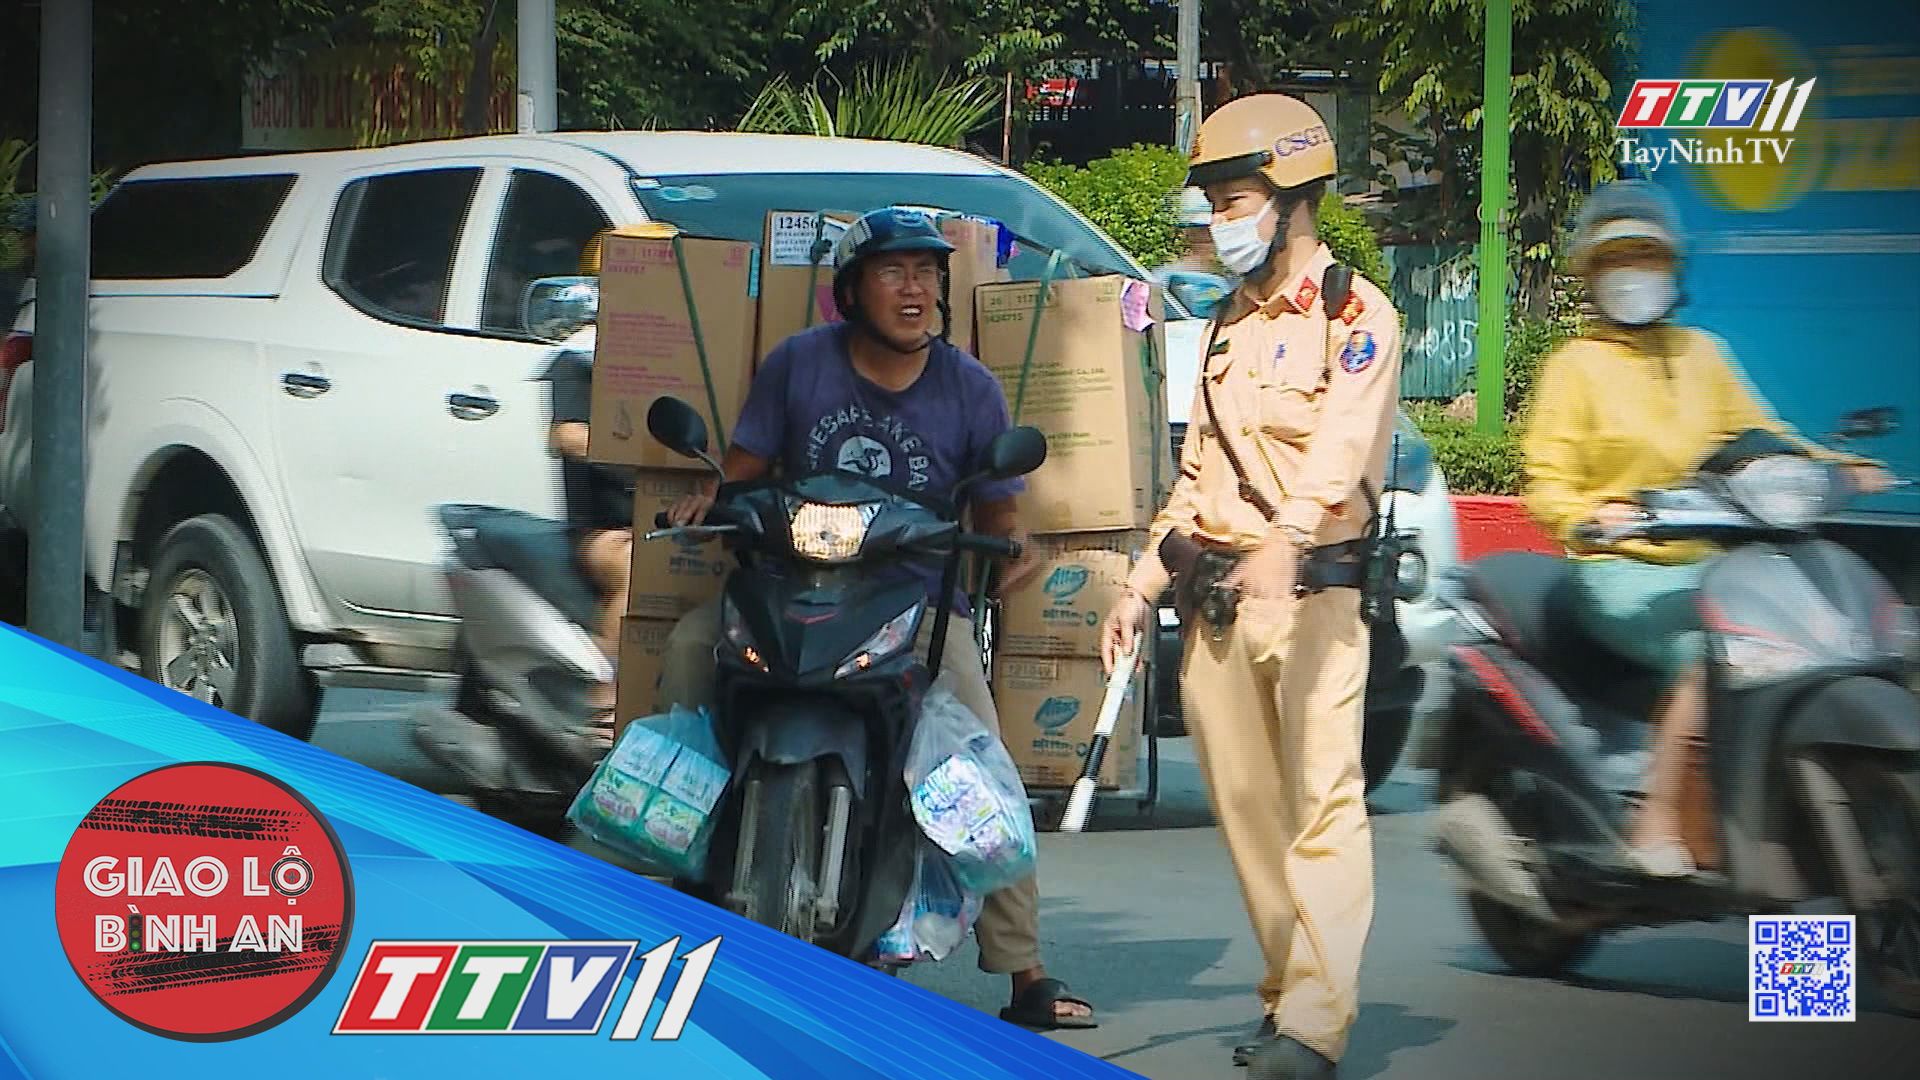 Nan giải tình trạng chở hàng cồng kềnh, quá khổ | Giao lộ bình an | TayNinhTV